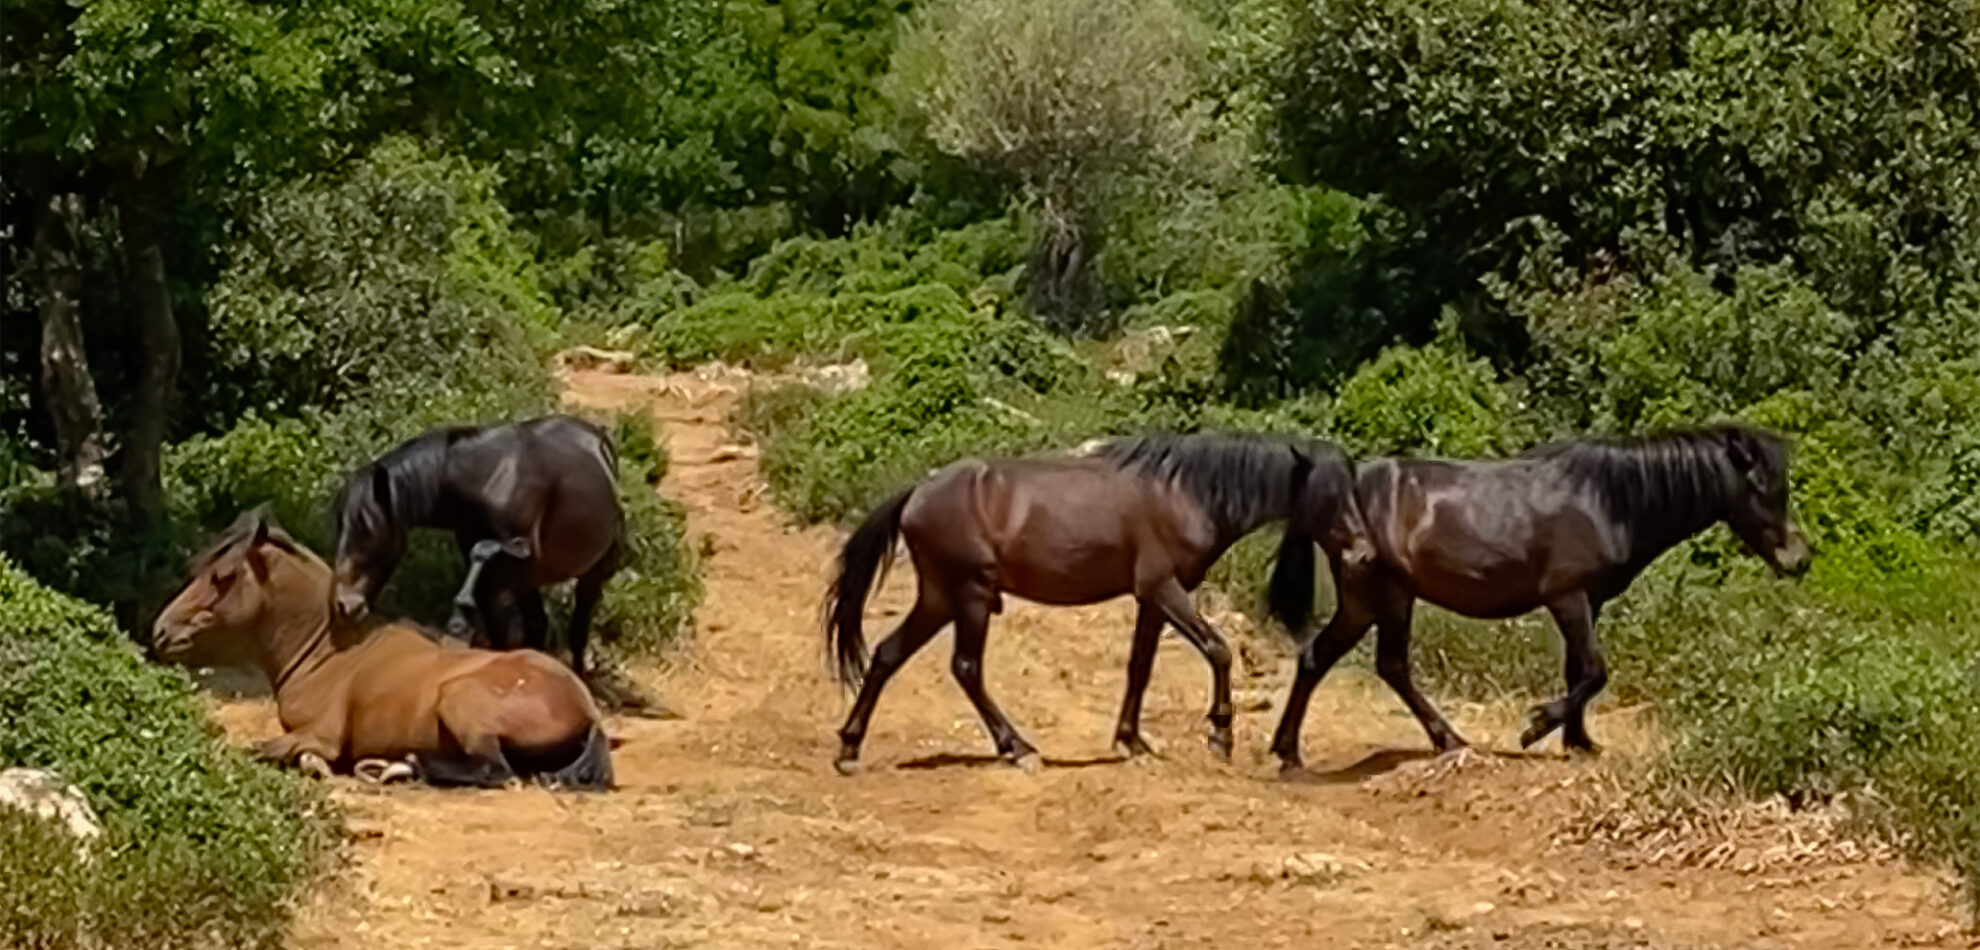 Wild horses on the Giara di Gesturi